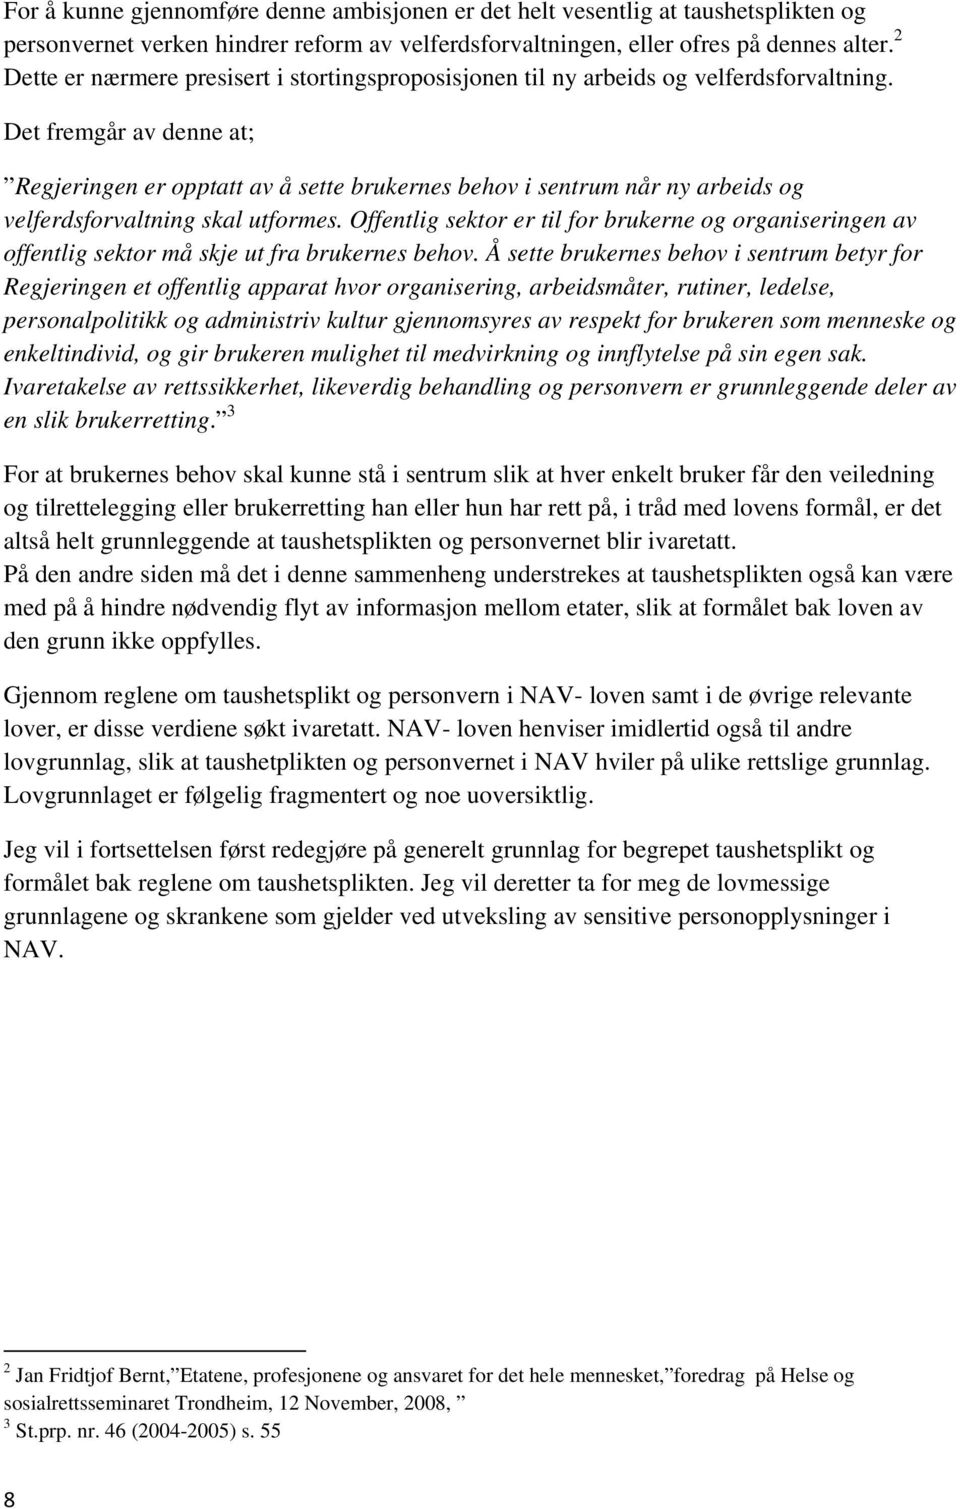 Taushetsplikt og personvern i den nye arbeids og velferdsetaten (NAV) - PDF  Free Download